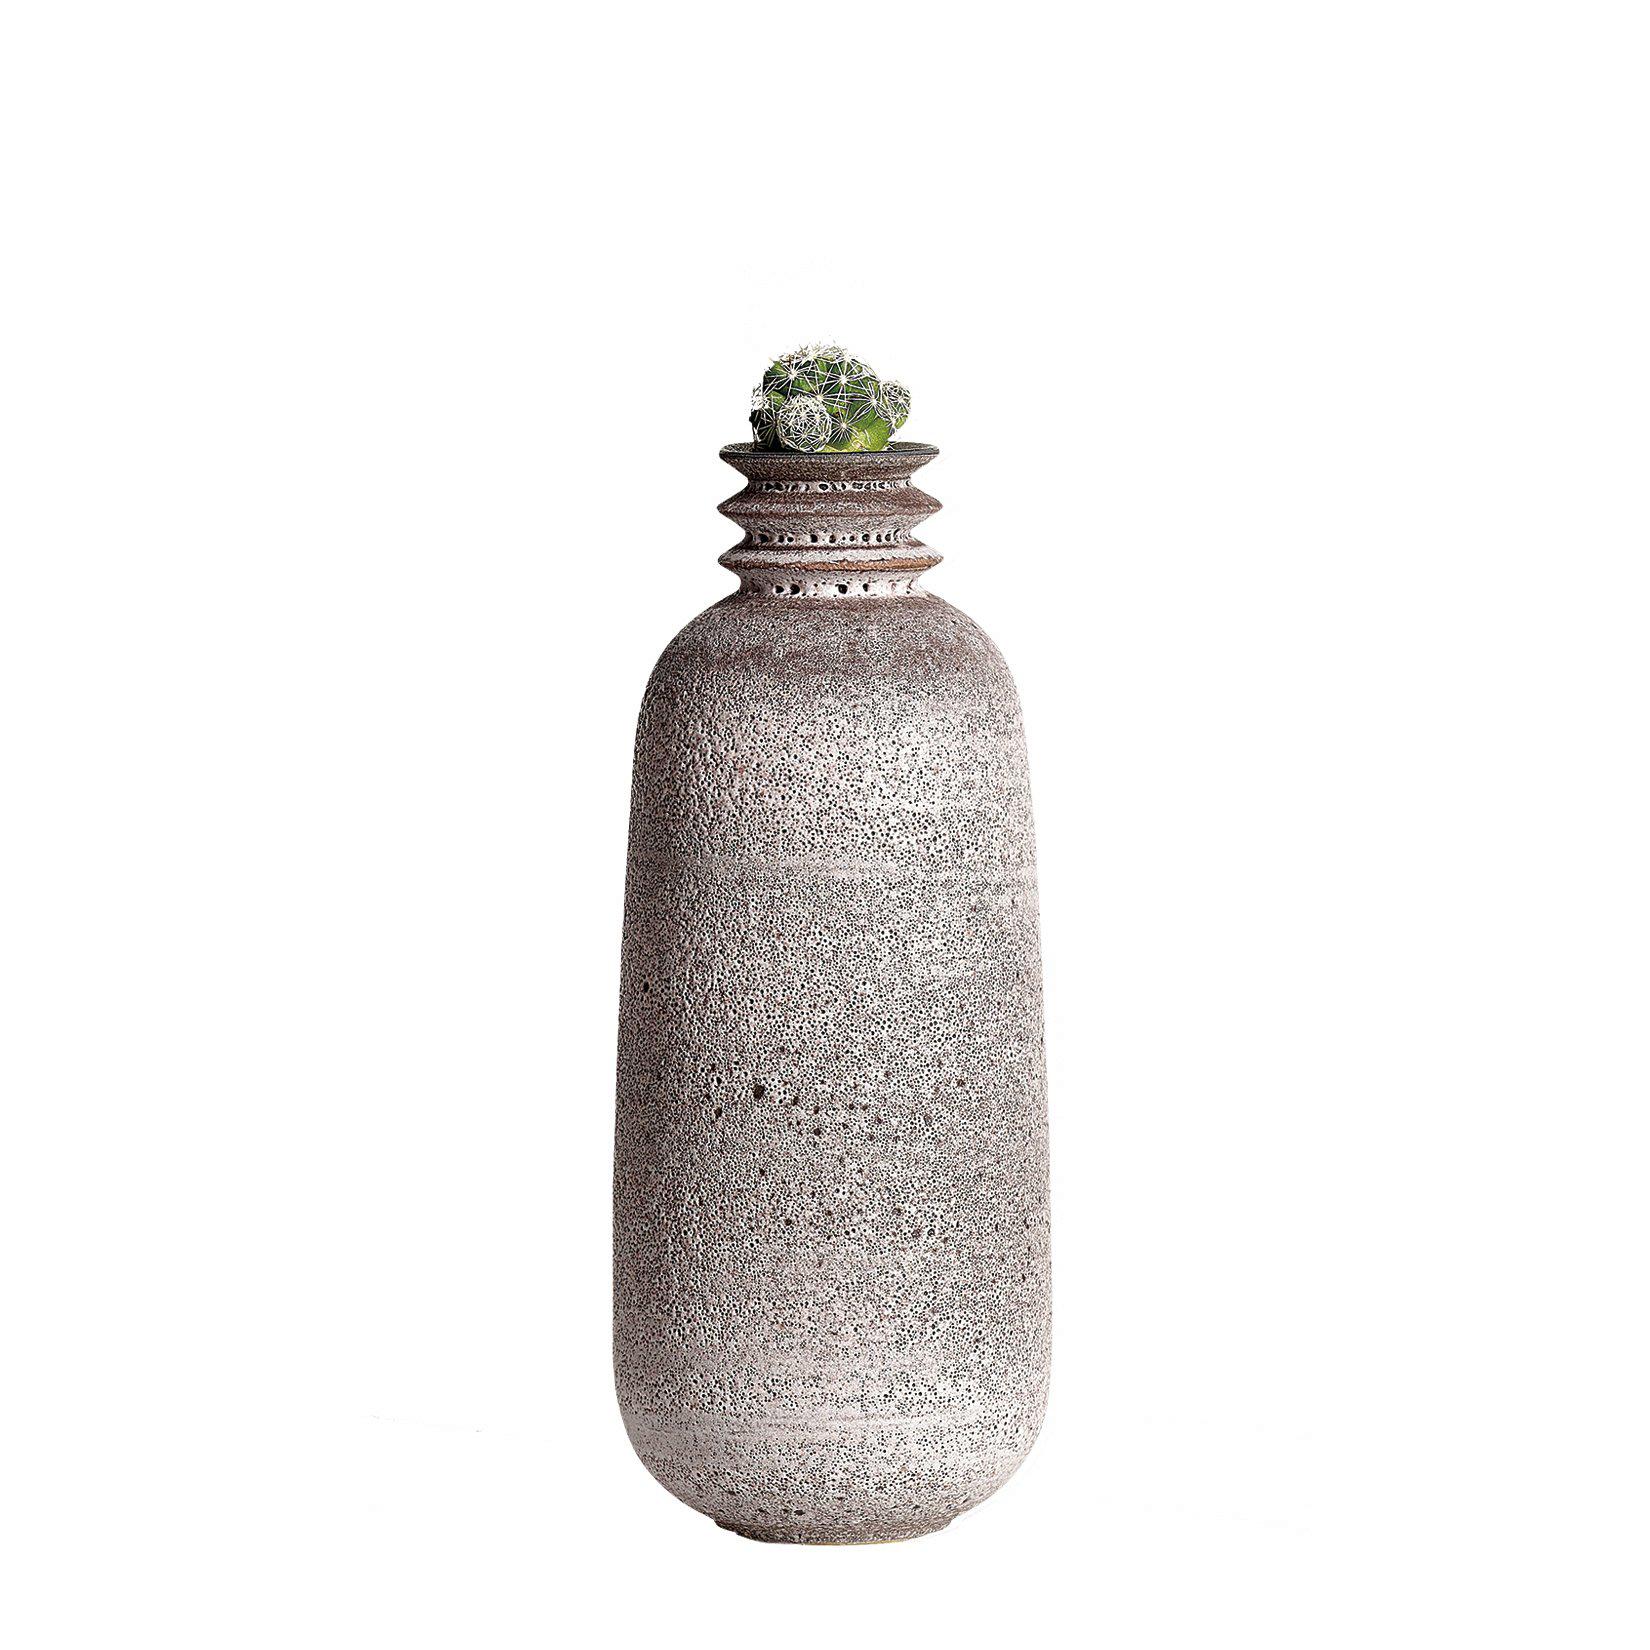 Moss Pink, Vessel O, Slip Cast Ceramic Vase, N/O Vessels Collection For Sale